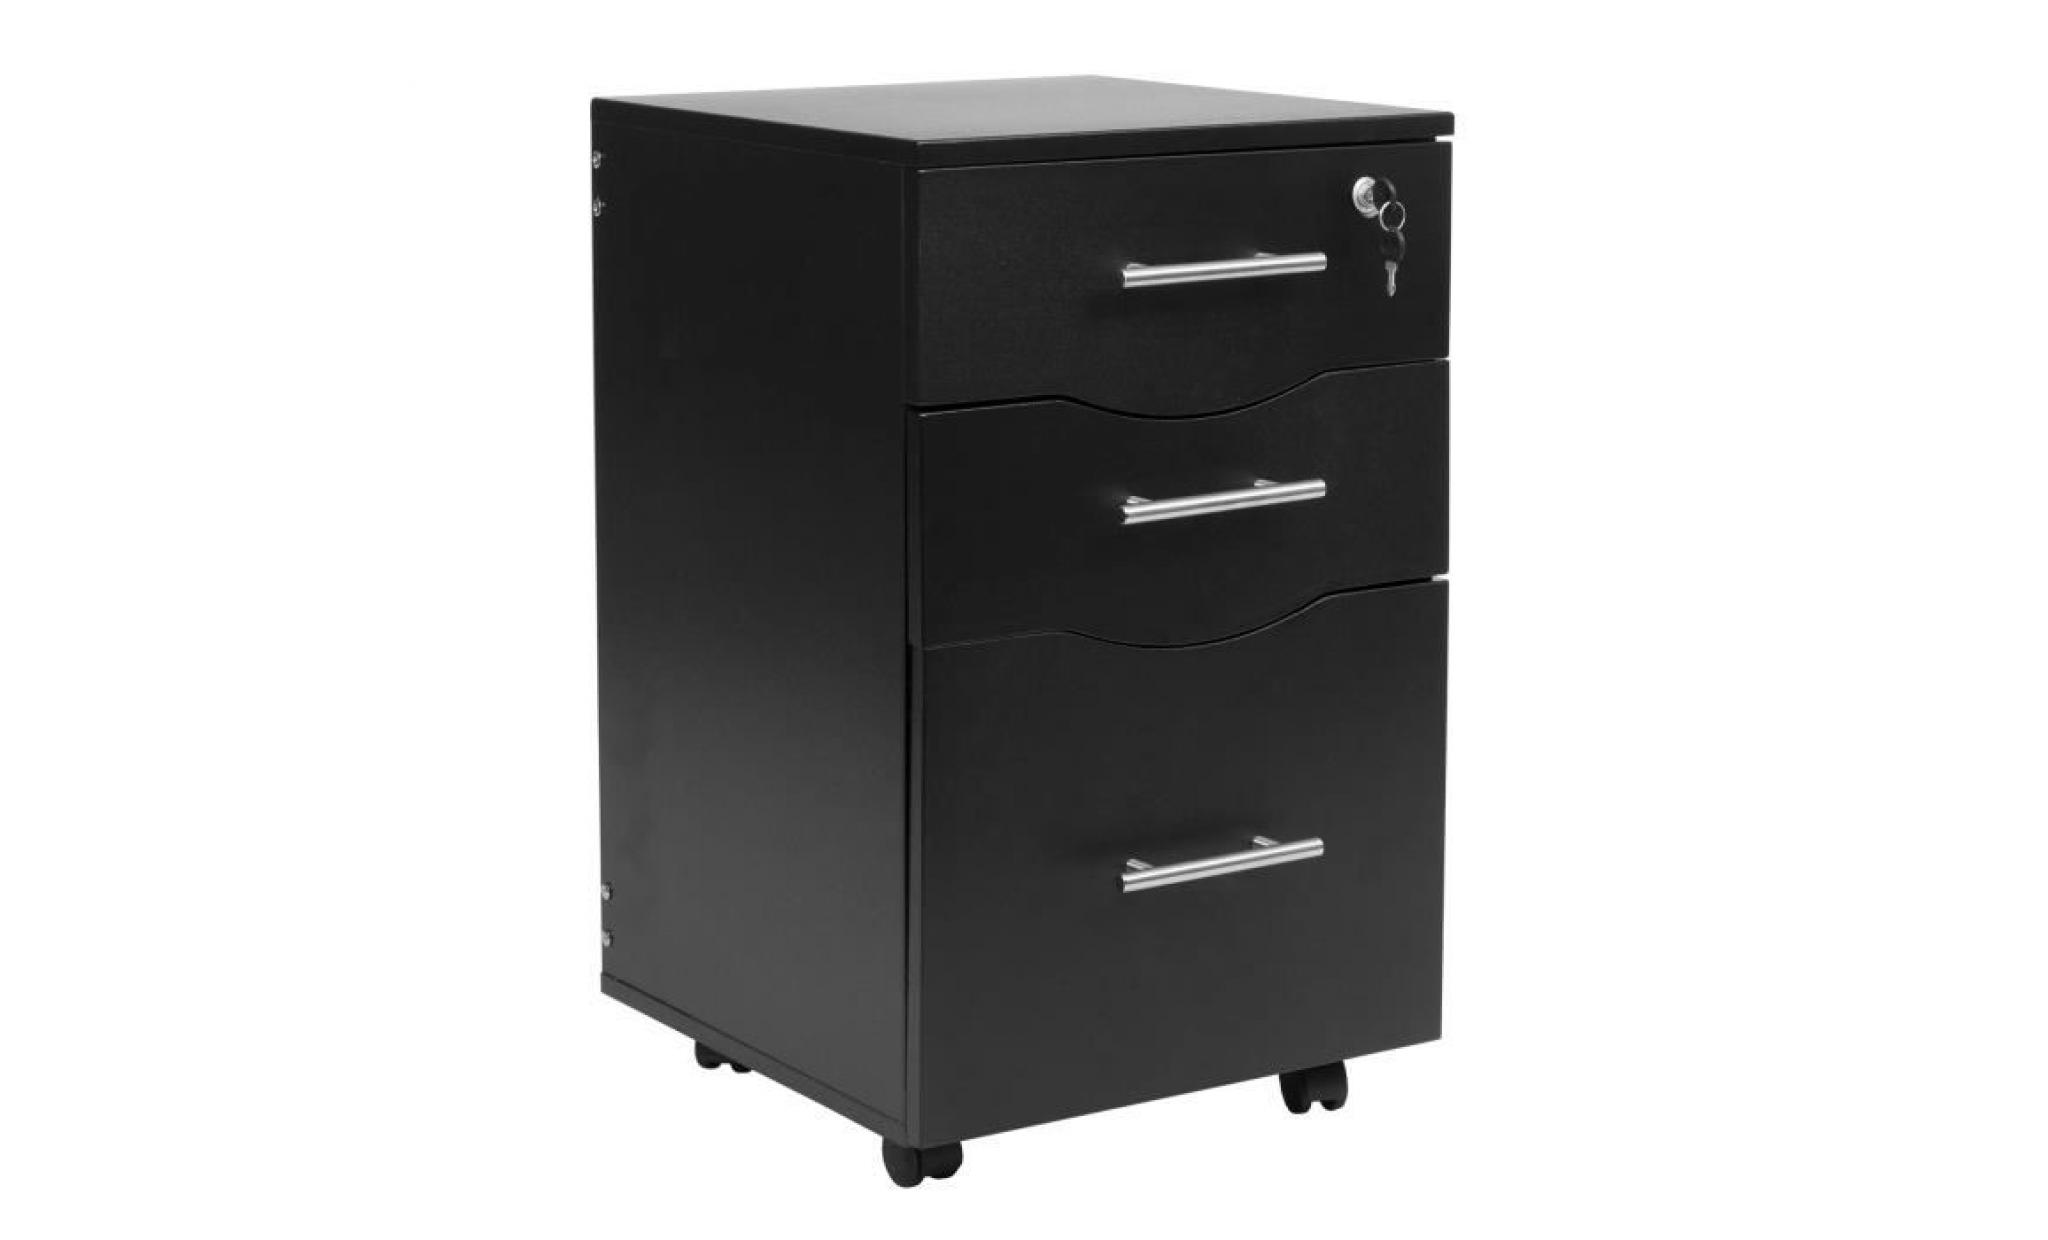 mmt black 3 drawer mobile under desk pedestal filing cabinet